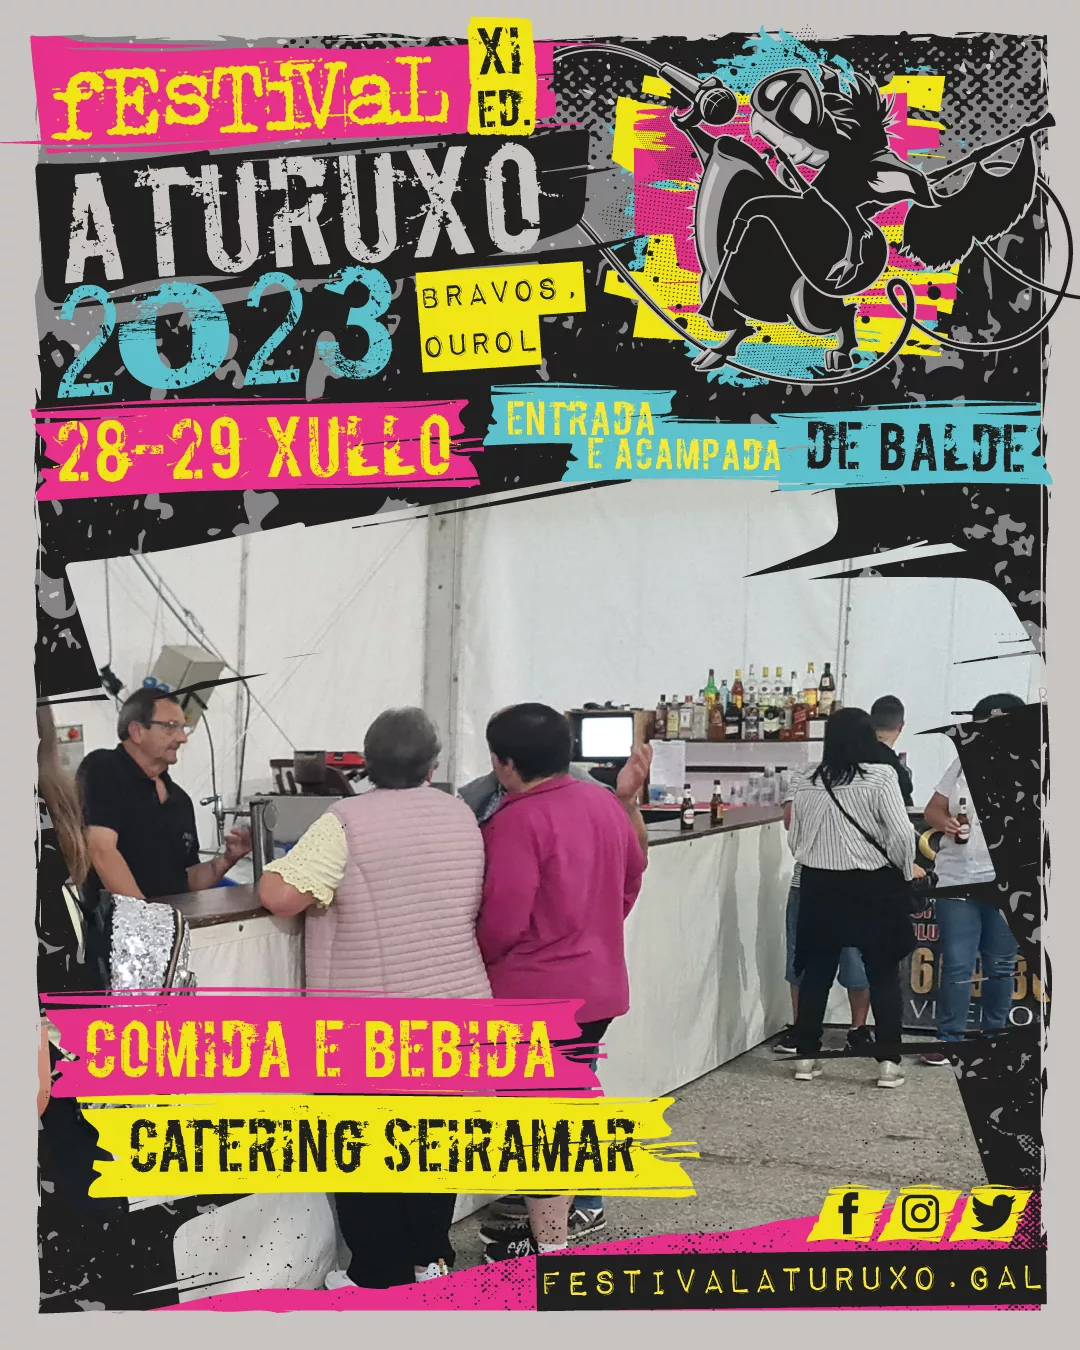 Catering Seiramar - Festival Aturuxo 2023 - XI Edición